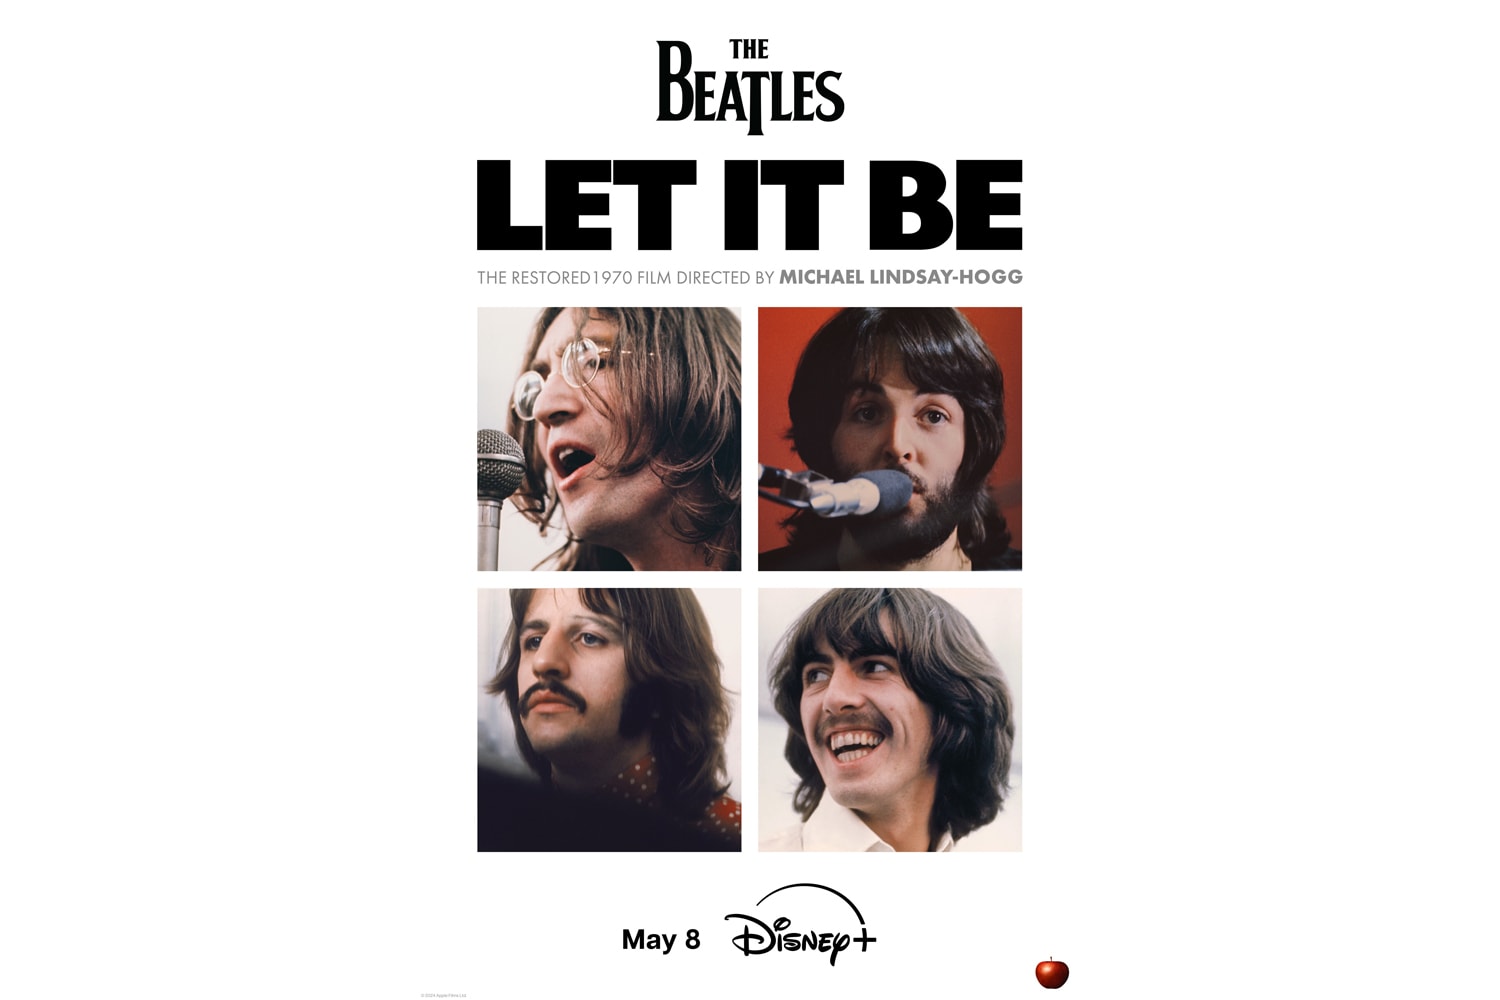 The Beatles 紀錄片電影《披頭四：隨它去吧 The Beatles: Let It Be》重製版即將登陸 Disney+